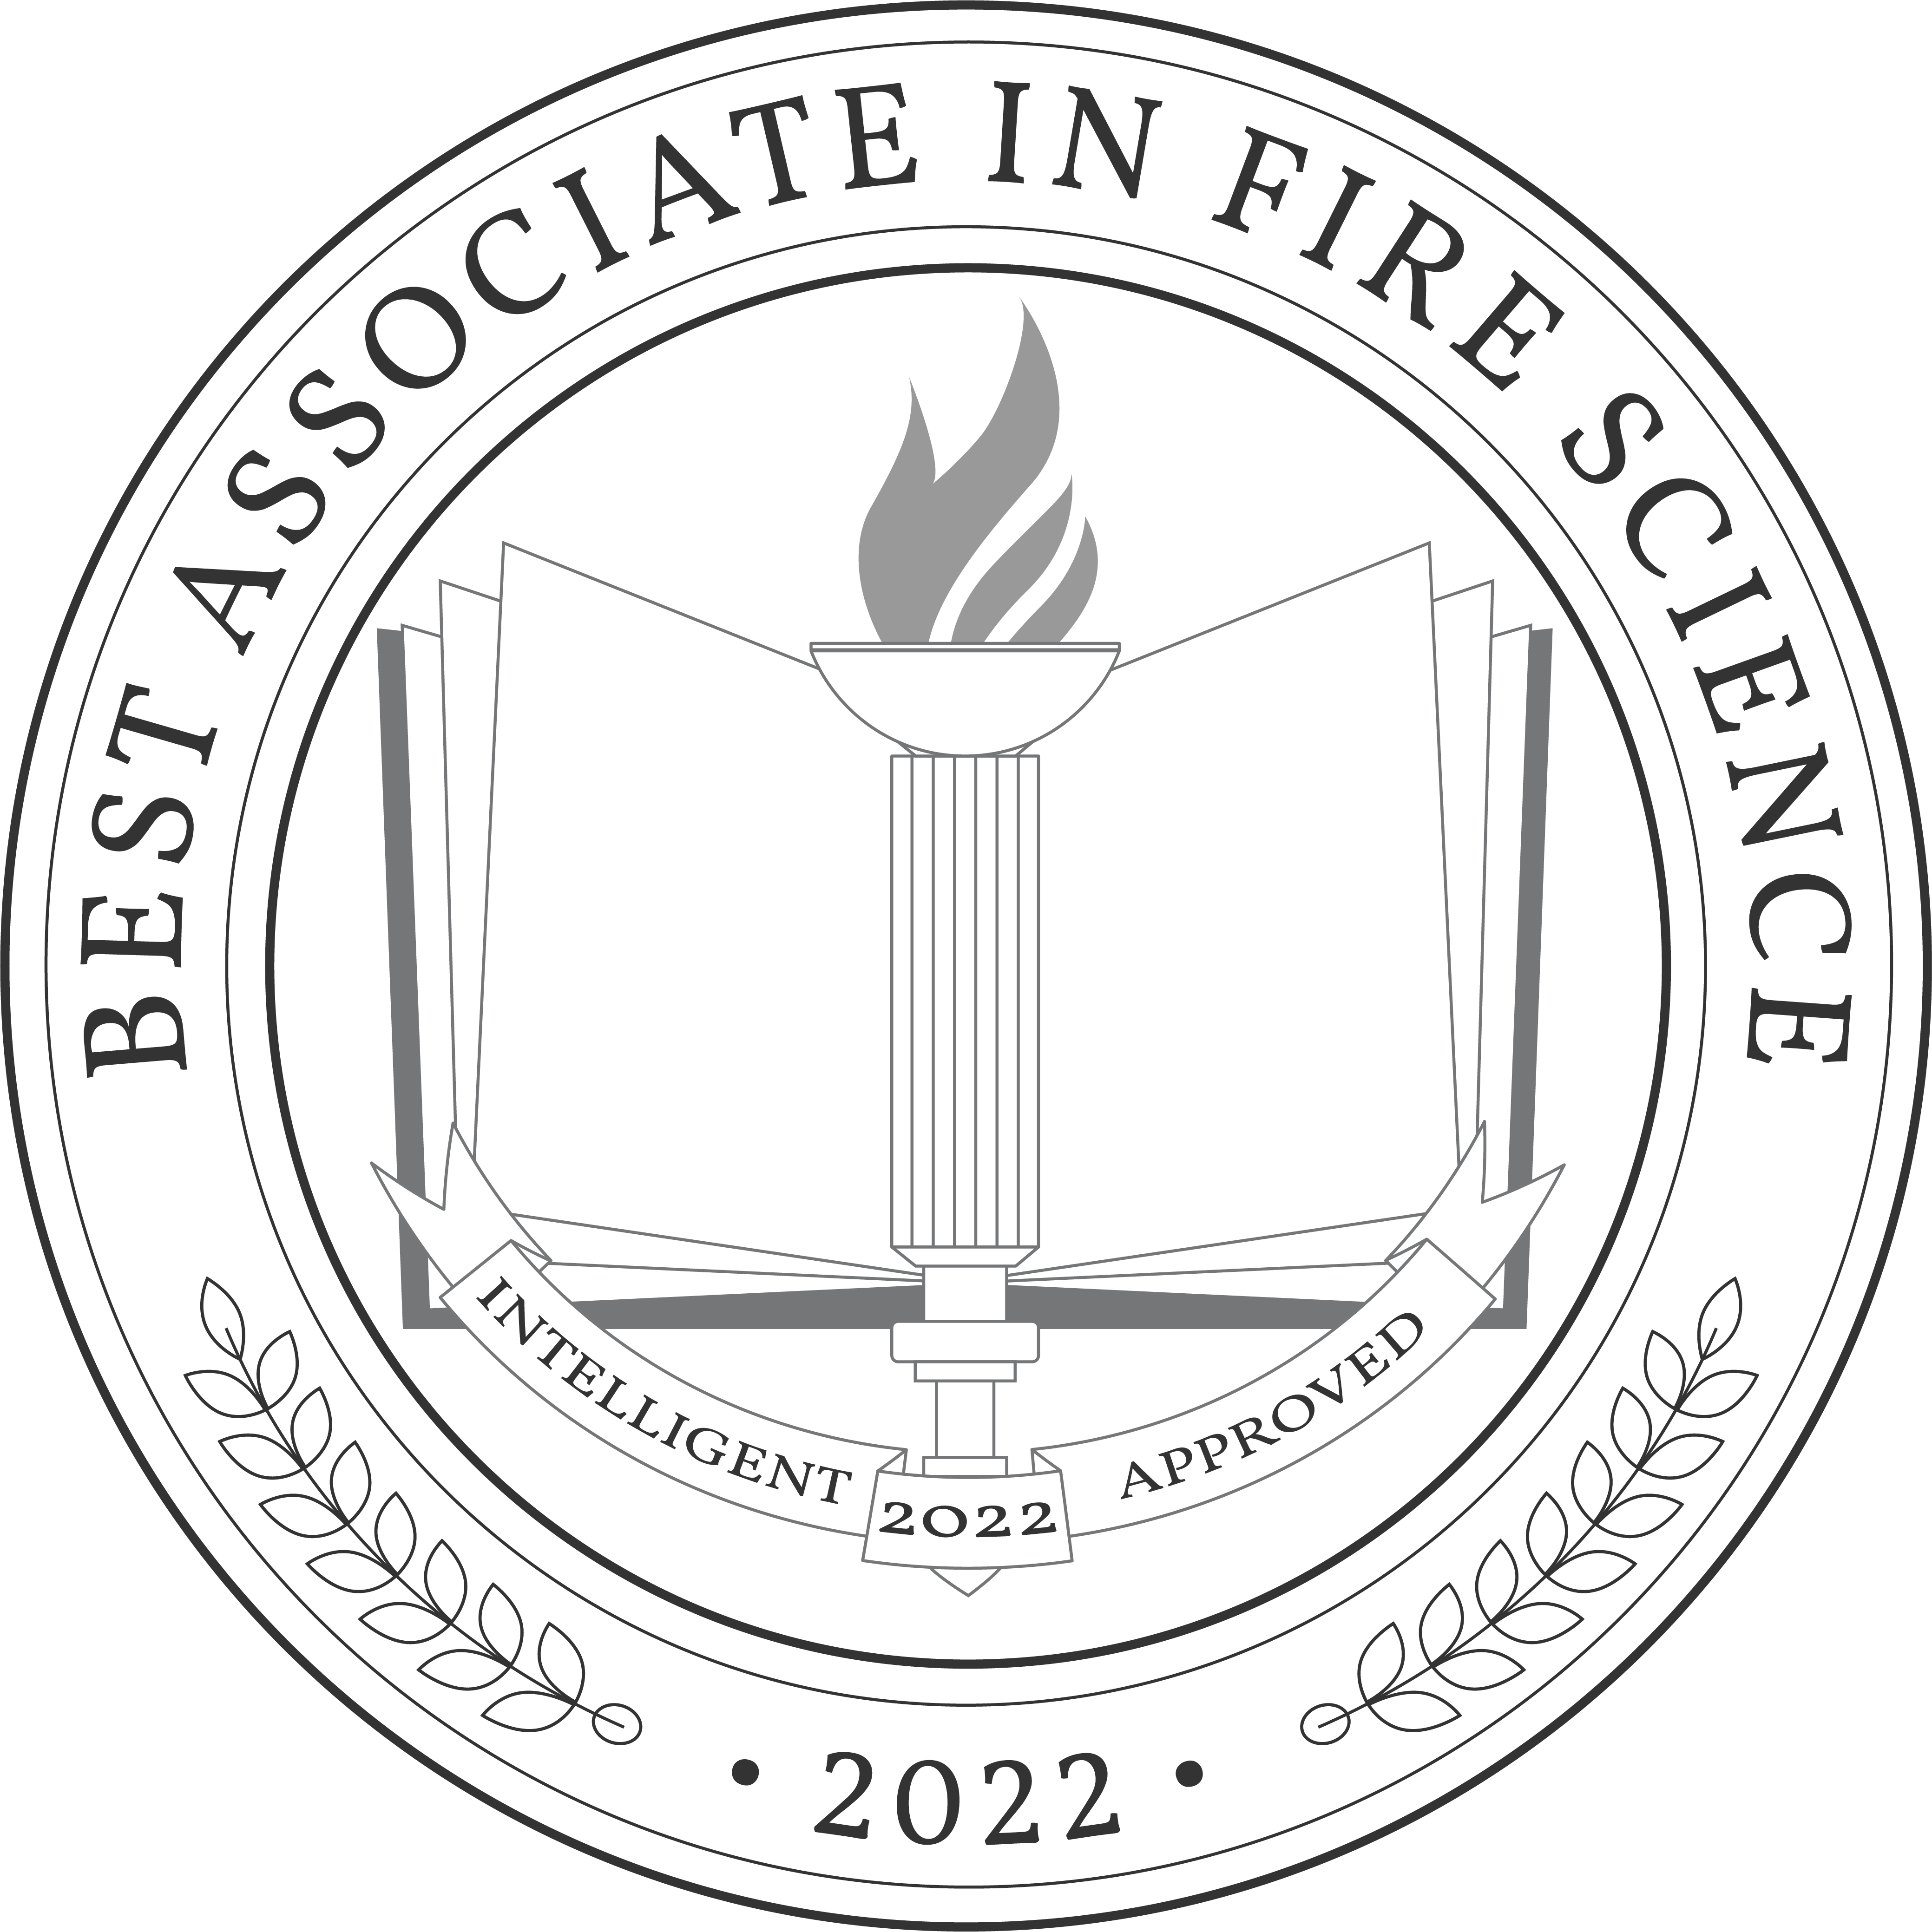 Best Associate in Fire Science Badge